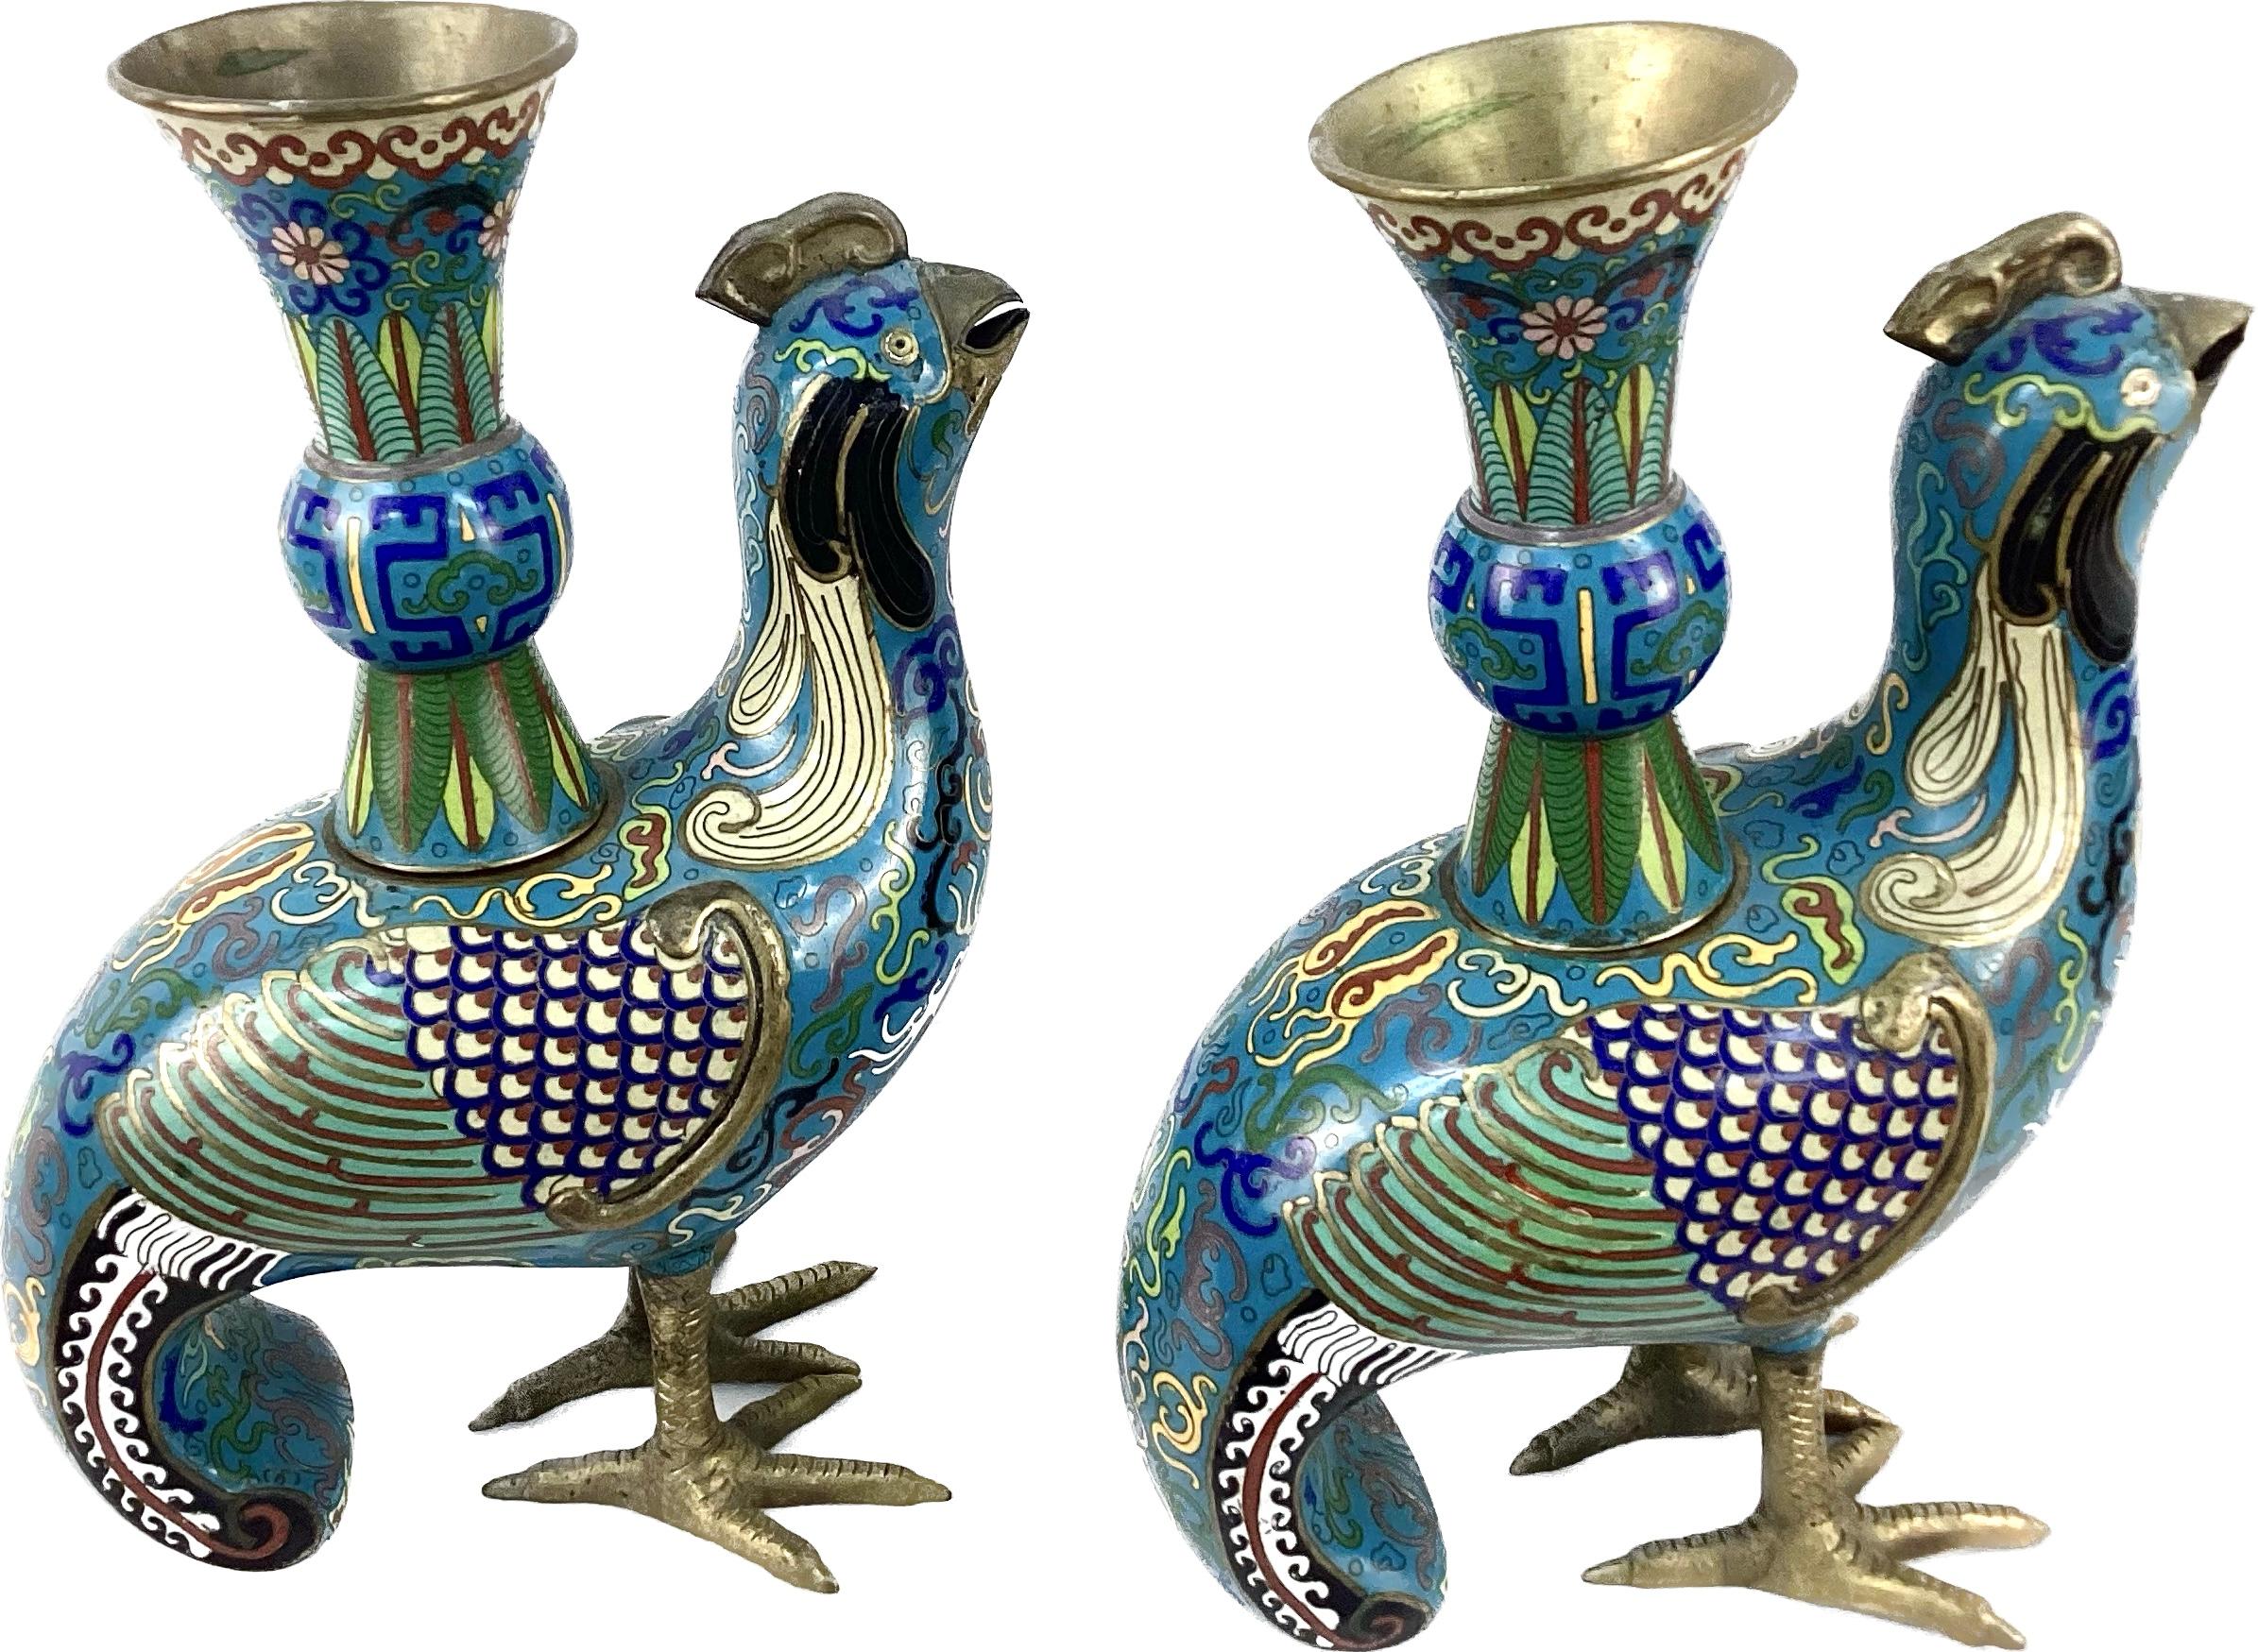 Paire d'oiseaux en cloisonne polychrome de style archaïque, chacun présentant un motif archaïque et décoré en bleu, vert et multicolore. Chaque oiseau a des plumes en forme d'éventail et des motifs en volutes jusqu'à la queue magnifiquement